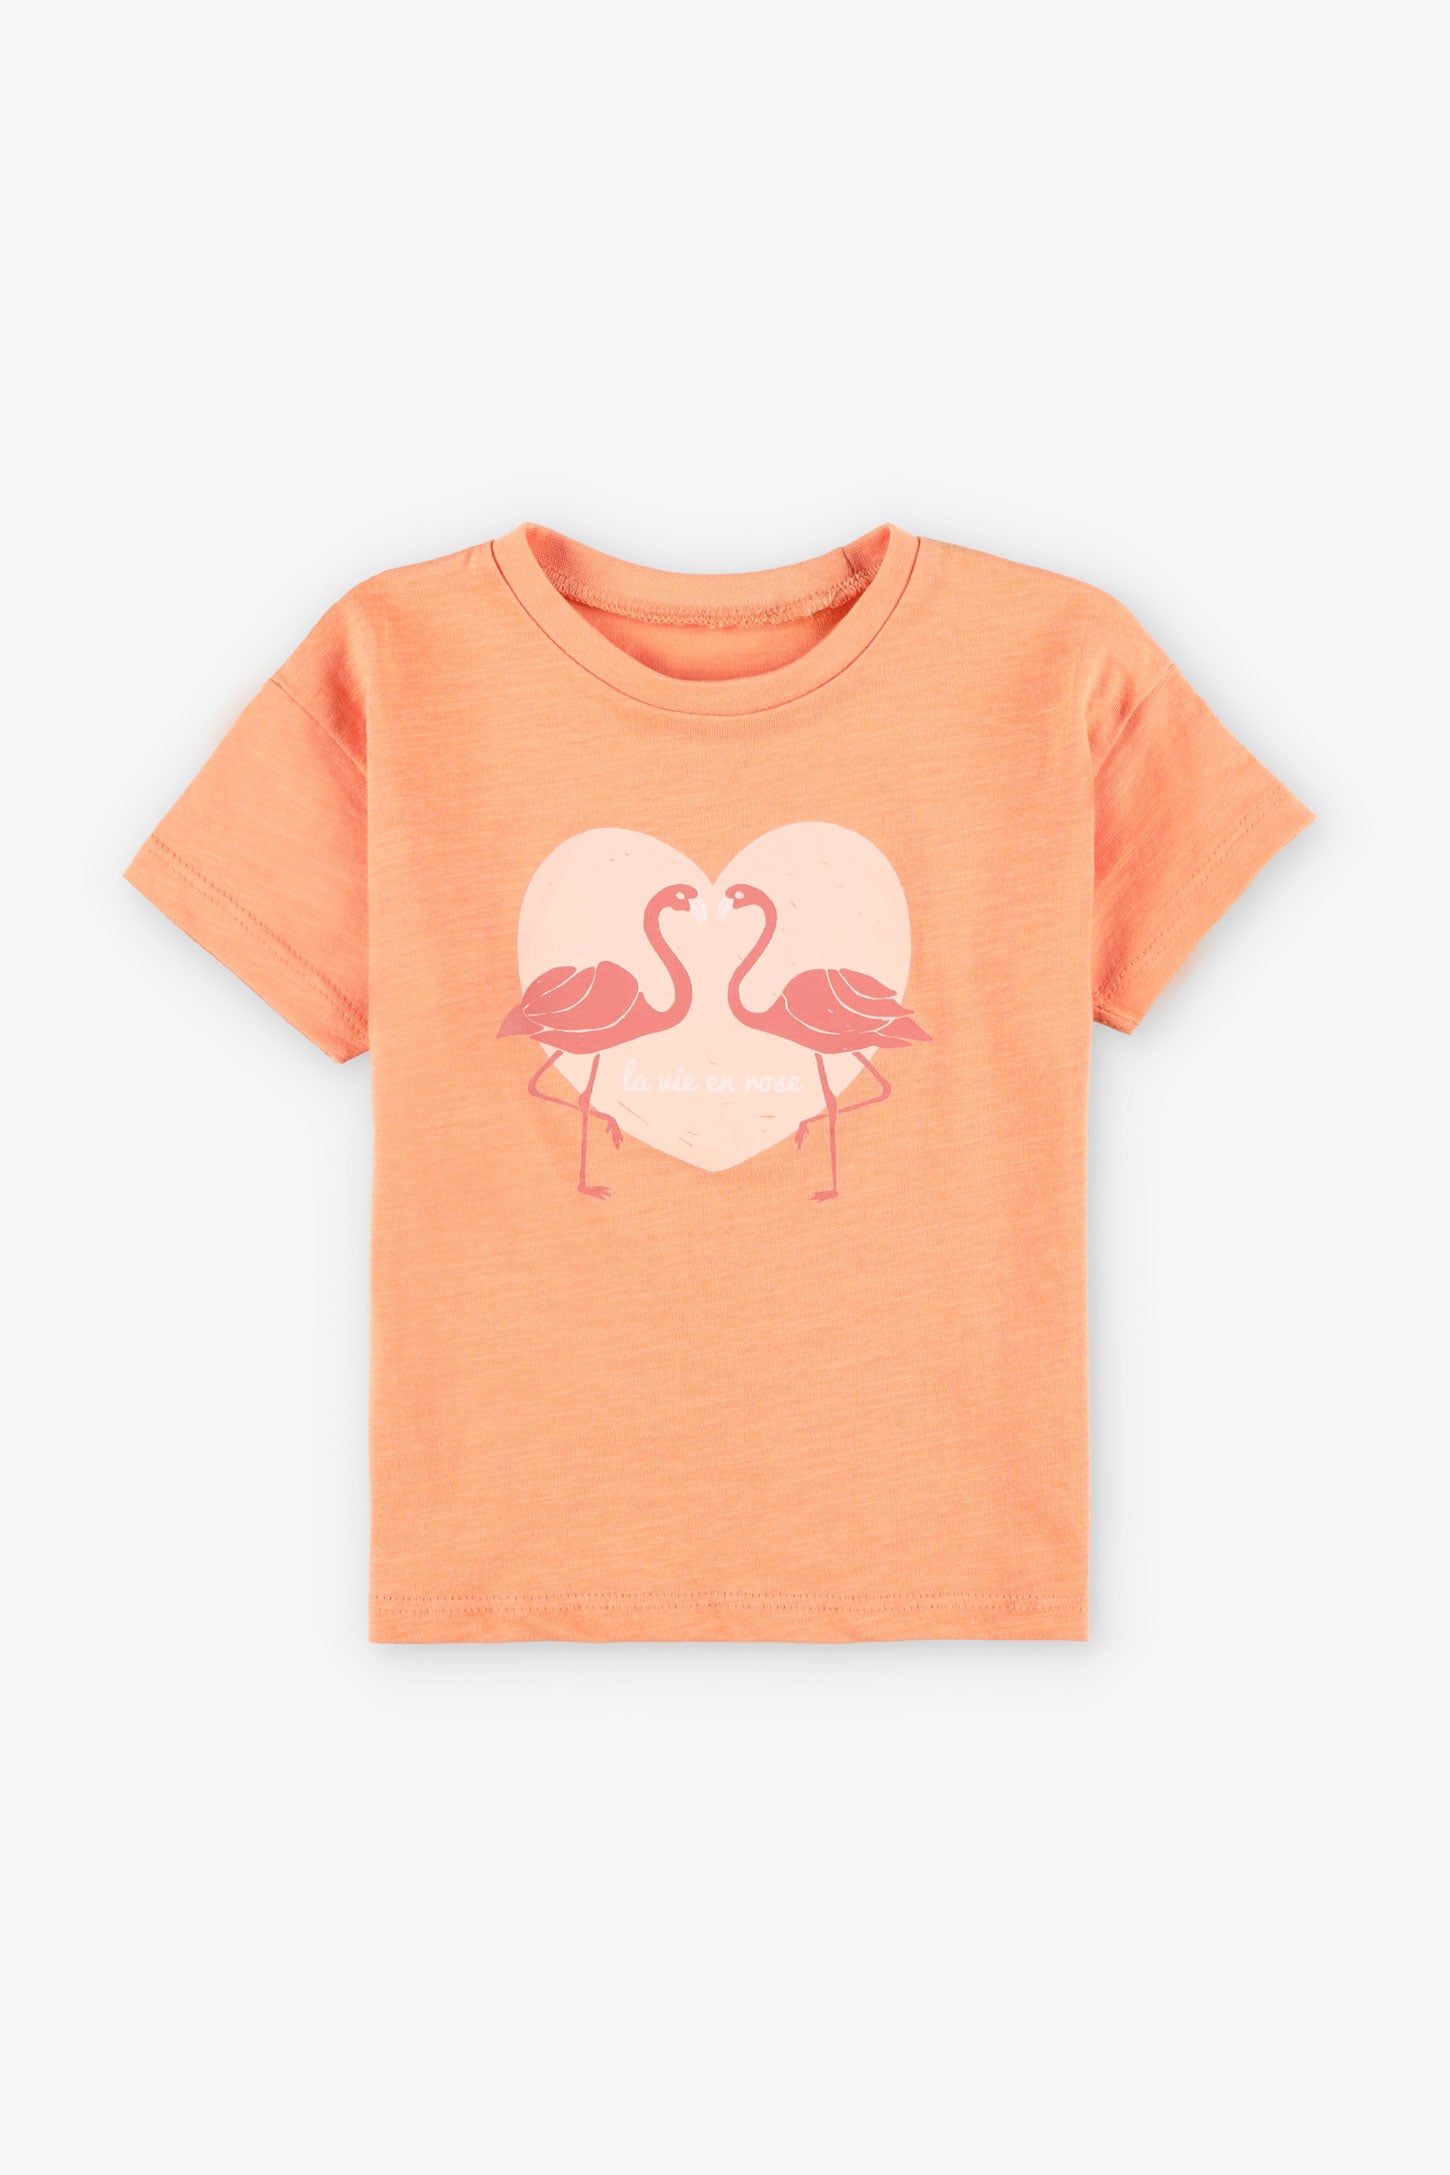 T-shirt coupe ample en coton, 2/15$ - Bébé fille && ORANGE